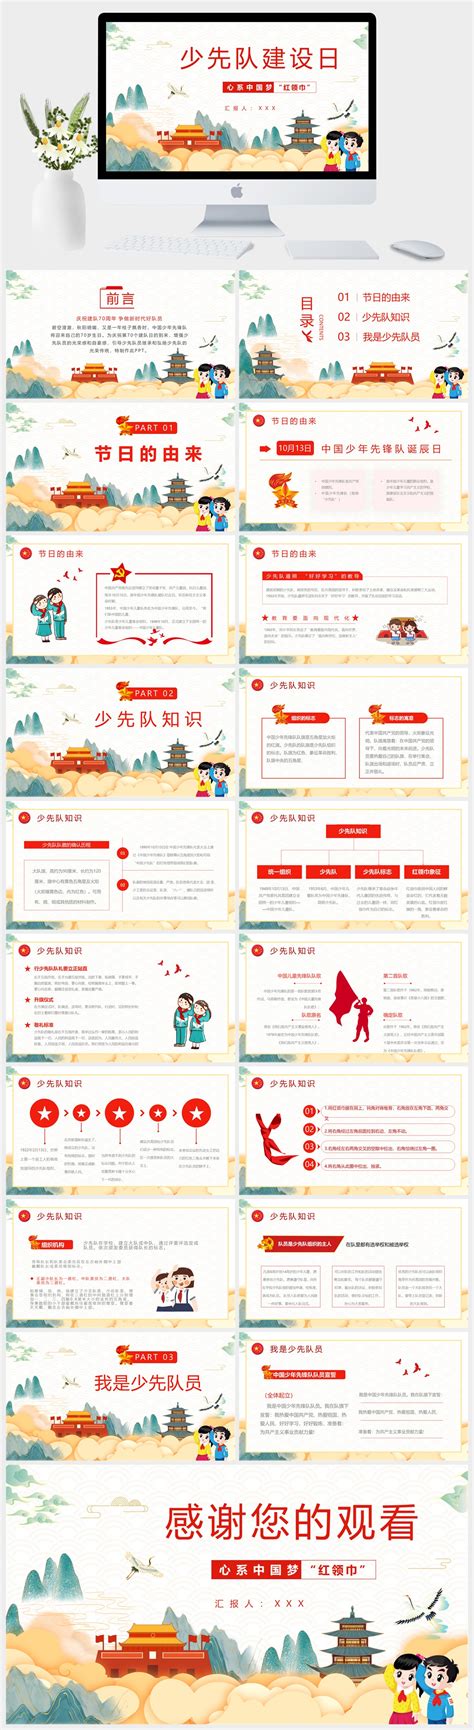 红领巾心系中国梦党建展板模板-包图网